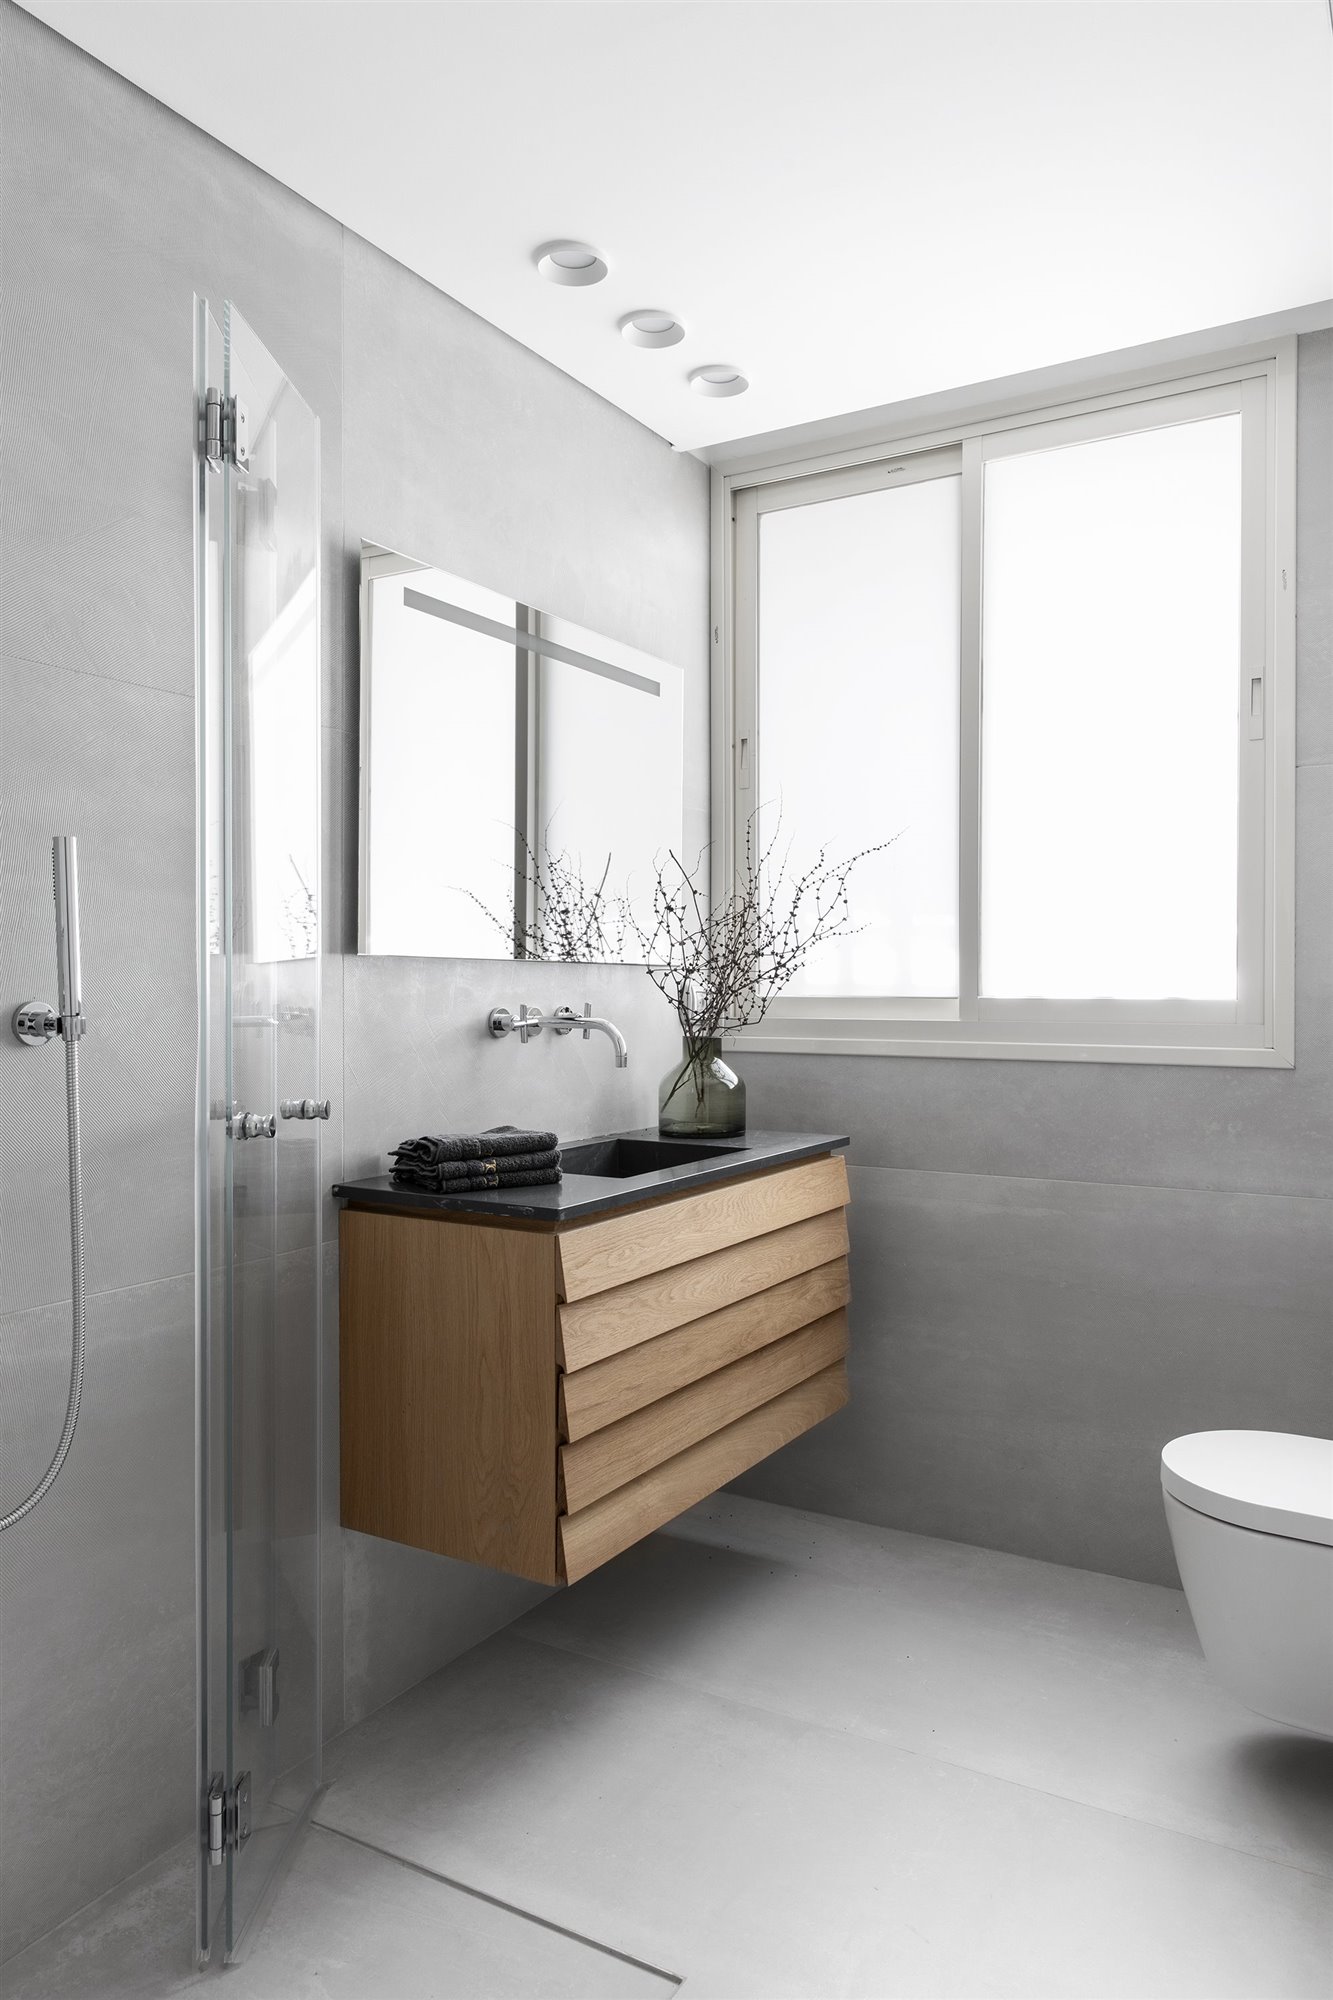 Baño con mueble suspendido de madera y acabados en color gris